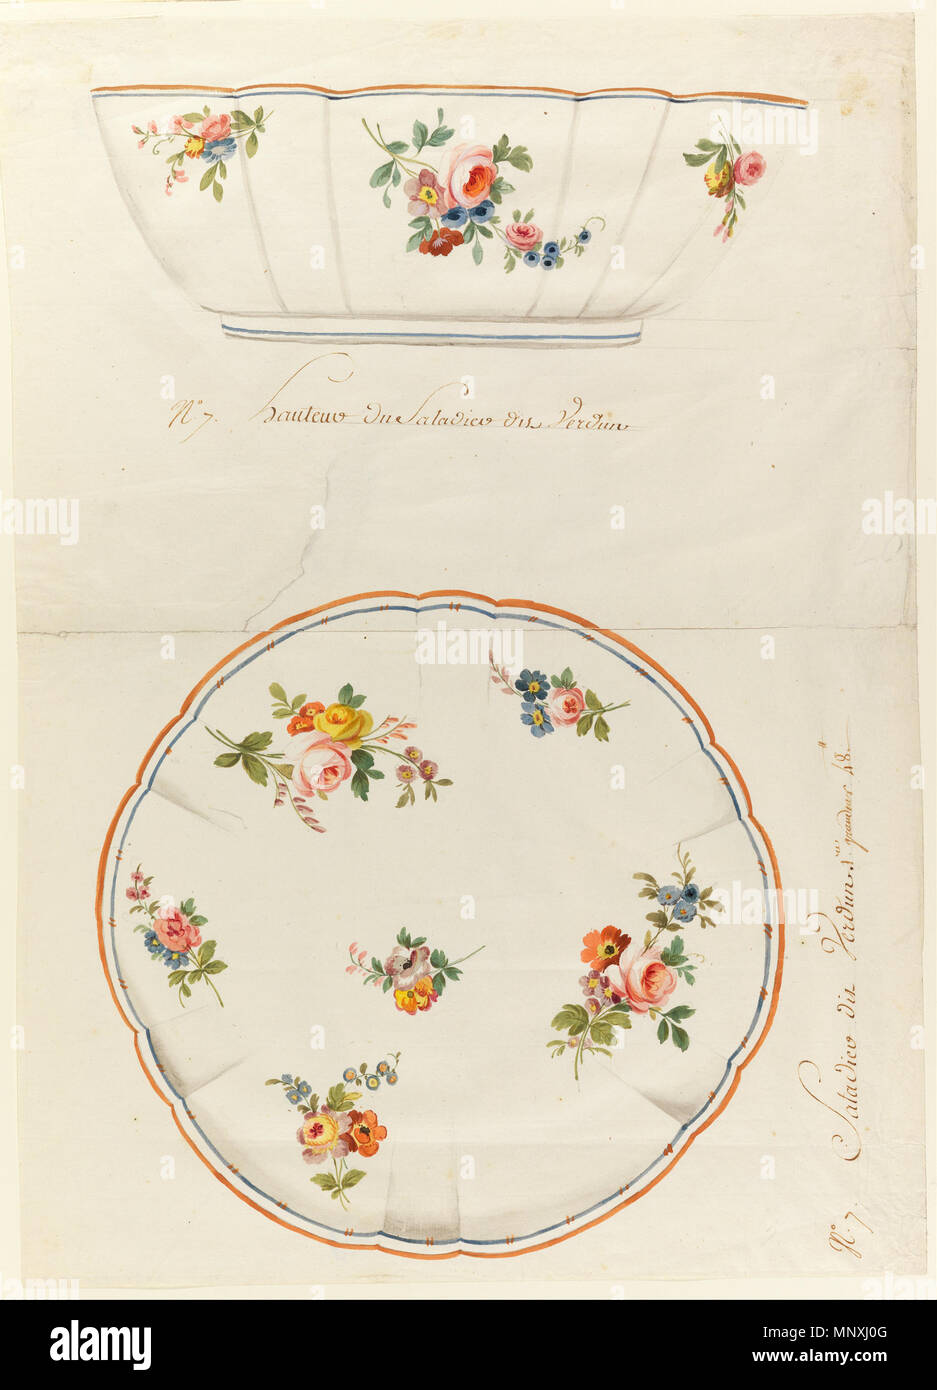 1156 Sèvres Porcelain Manufactory - Design for a Painted Porcelain Scalloped Salad Bowl, for Sèvres Porcelain Manufactury - Google Art Project Stock Photo